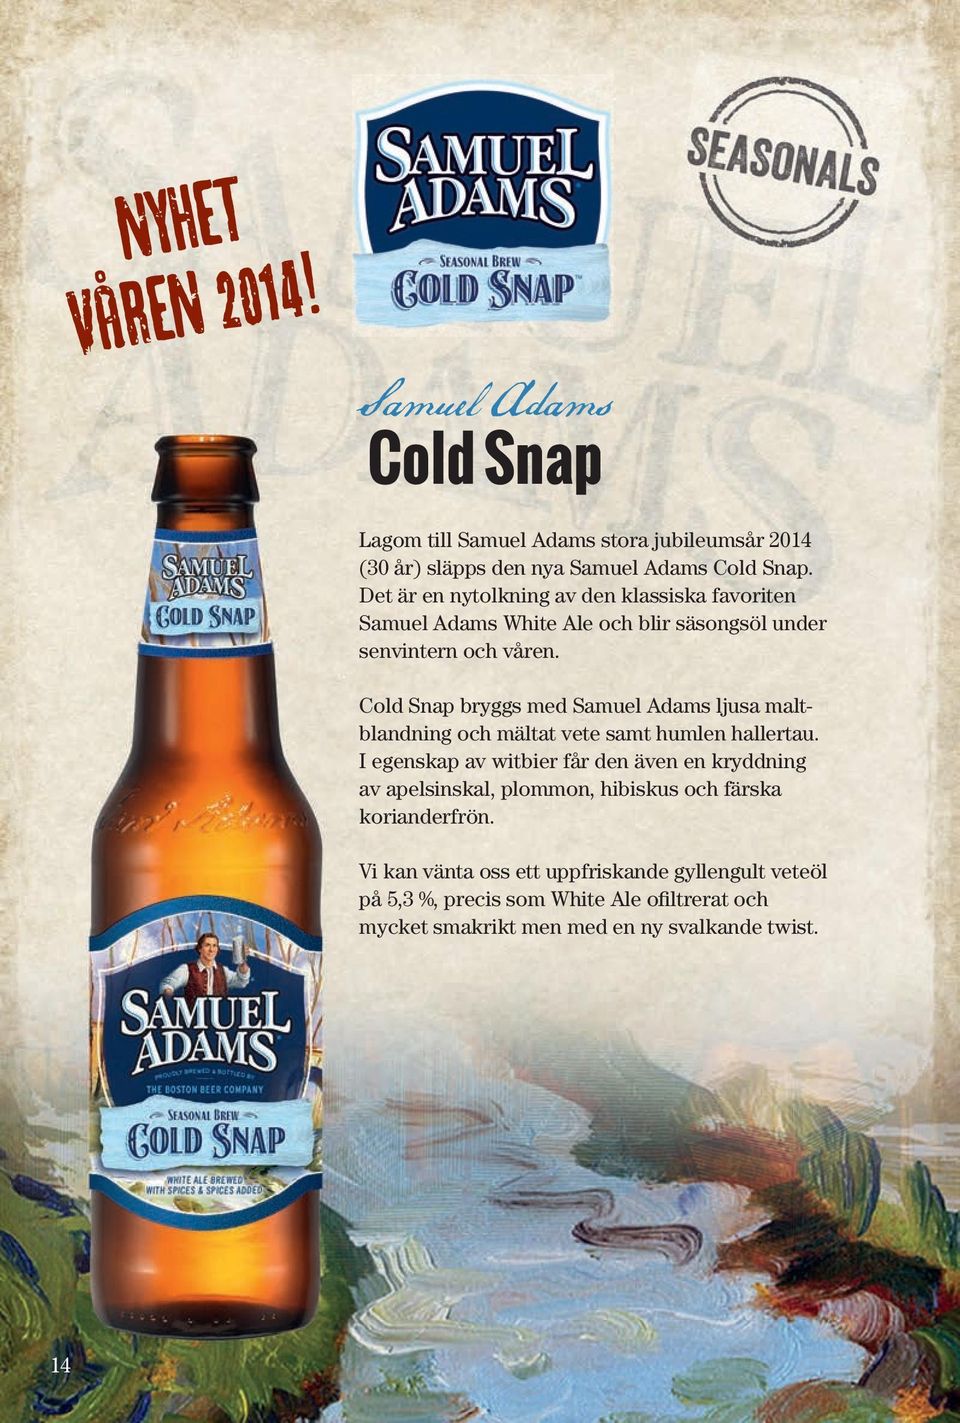 Cold Snap bryggs med Samuel Adams ljusa maltblandning och mältat vete samt humlen hallertau.